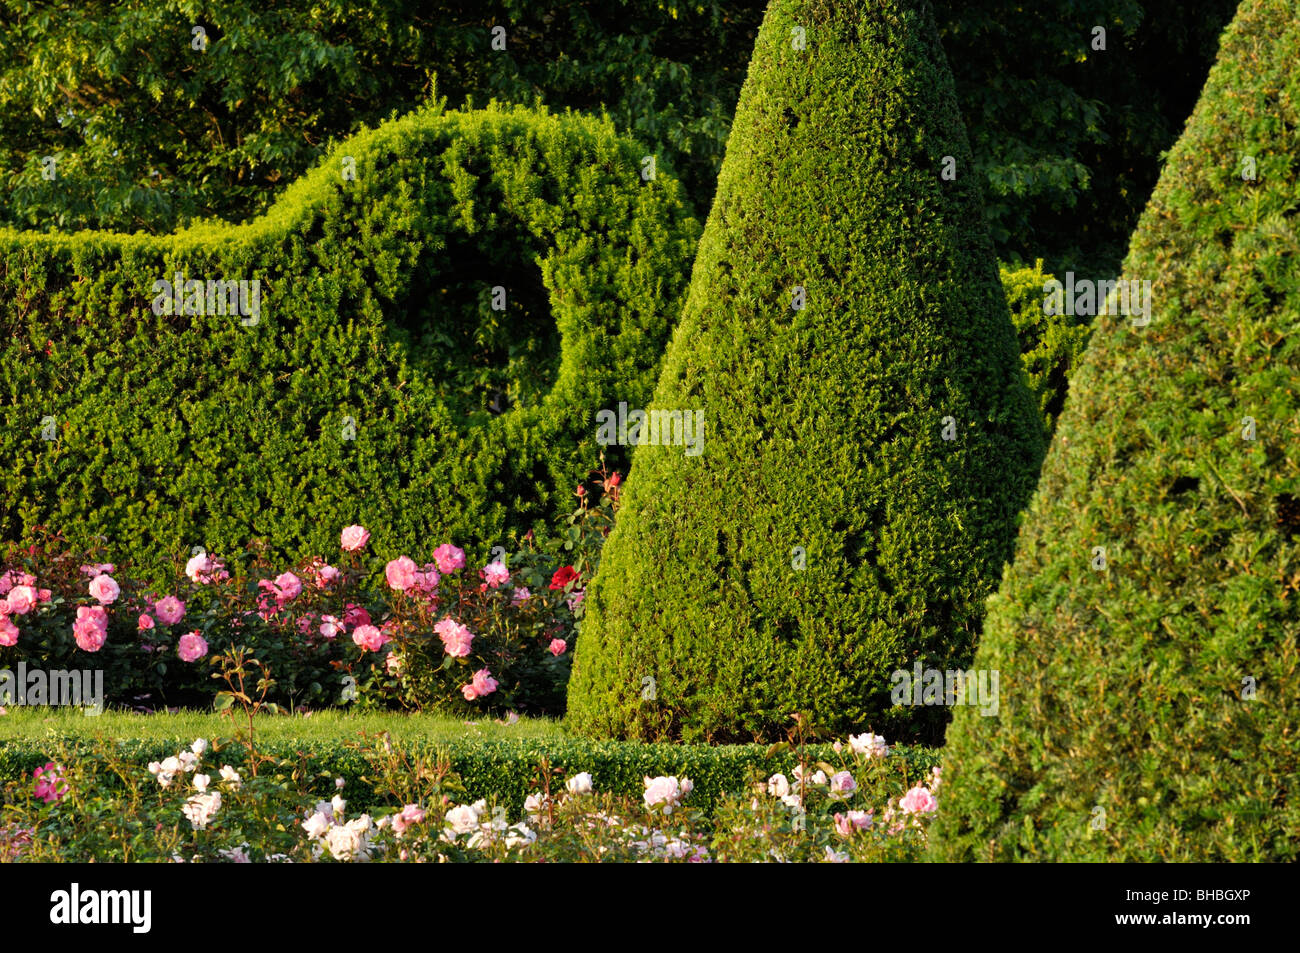 Gemeinsame Eibe (Taxus Whipplei) mit konischer Form in einem Rosengarten, Britzer Garten, Berlin, Deutschland Stockfoto